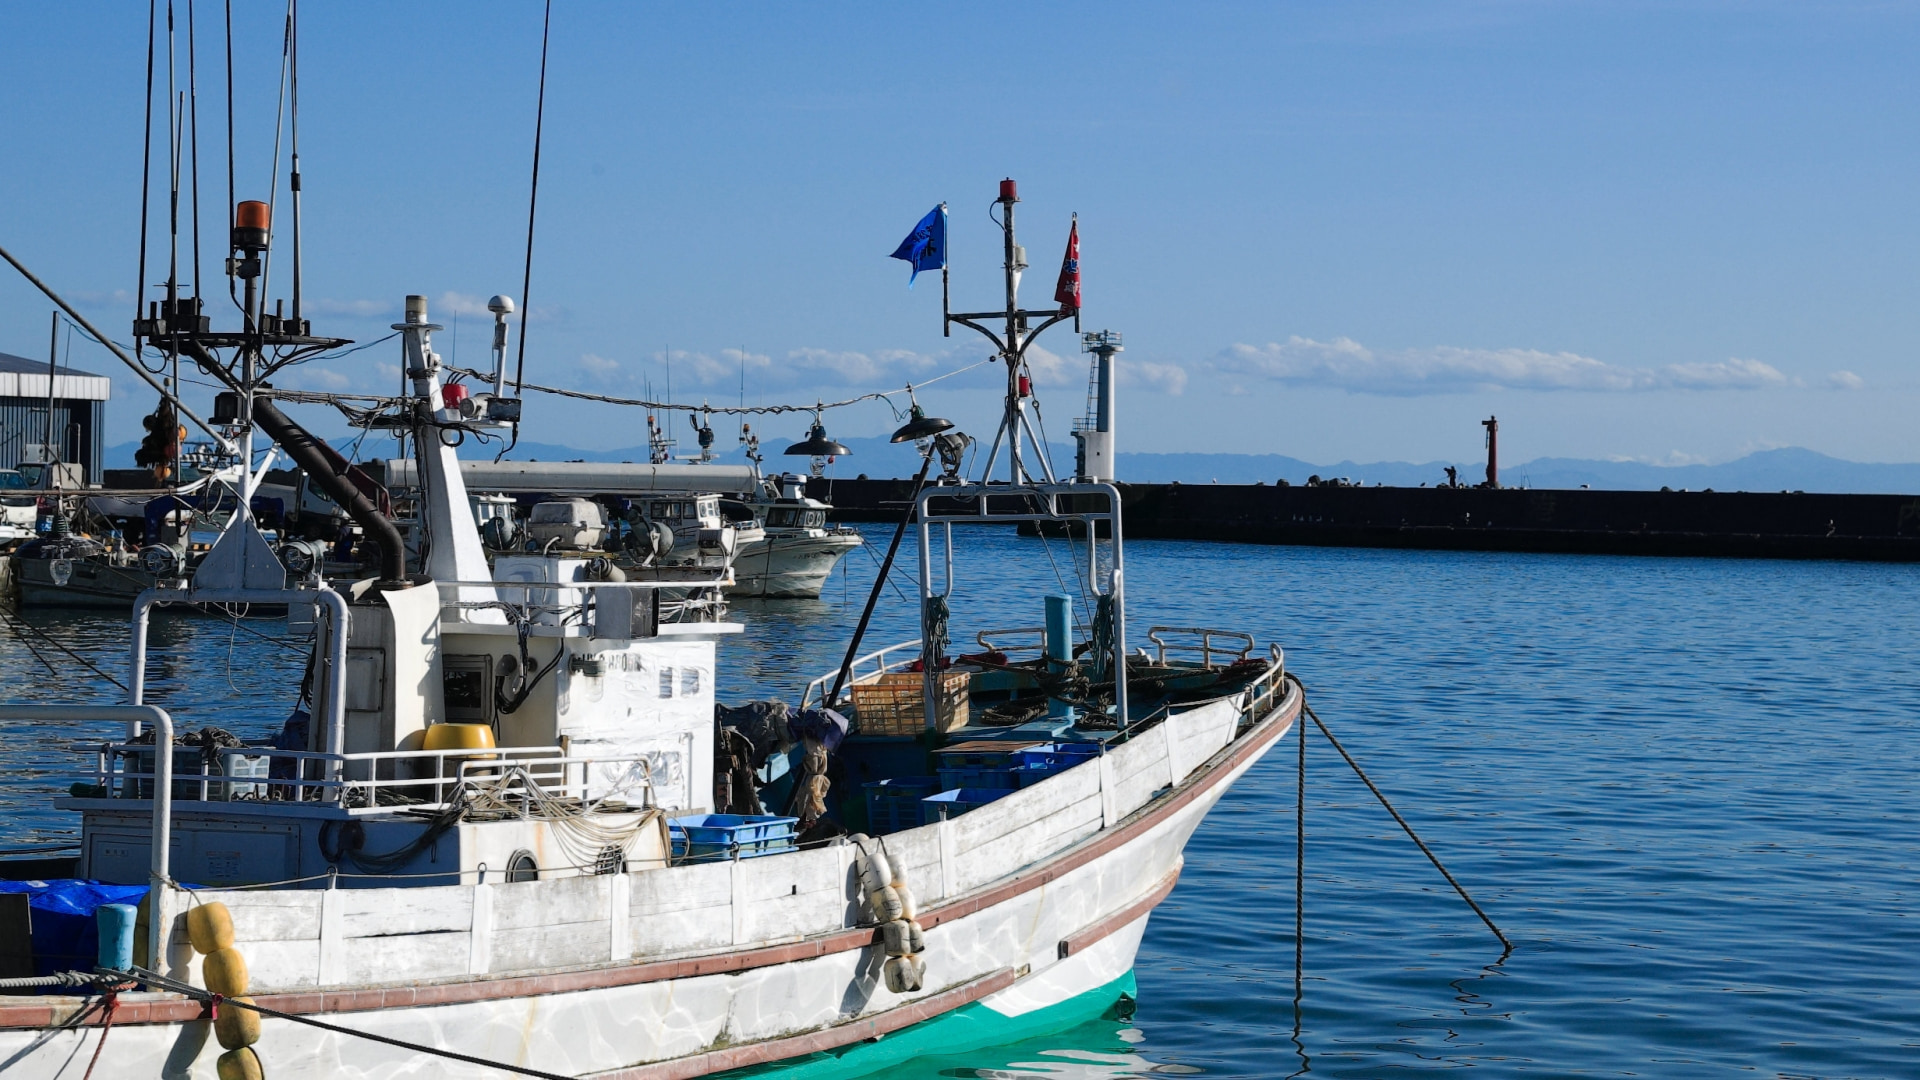 「一般社団法人 Porta Club（ポルタクラブ）」は、水産業従事者様を支援いたします。